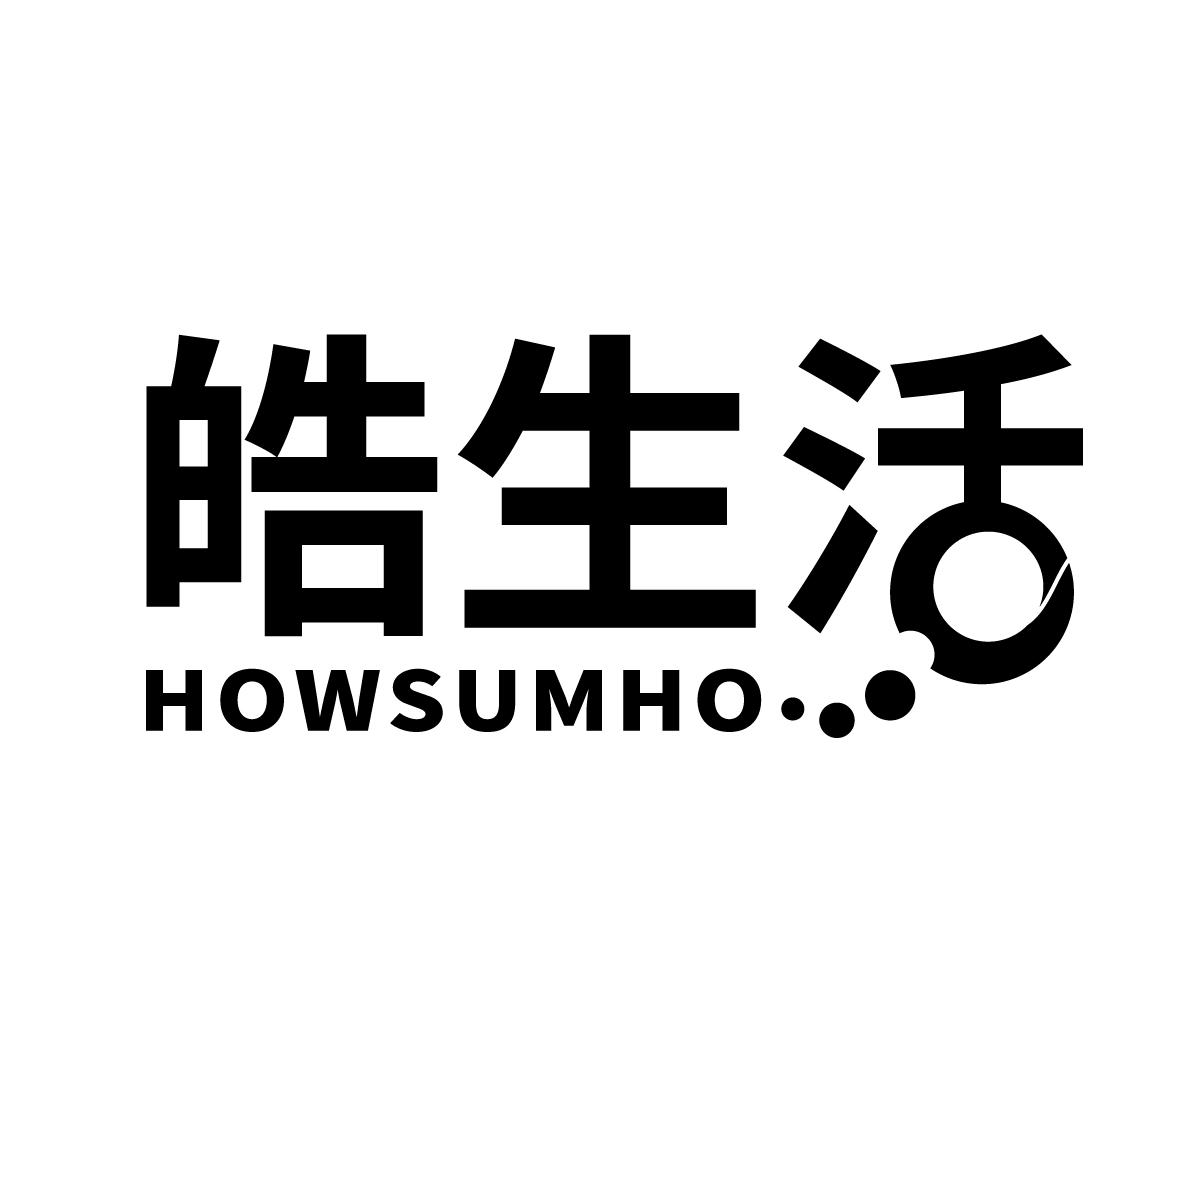  HOWSUMHO